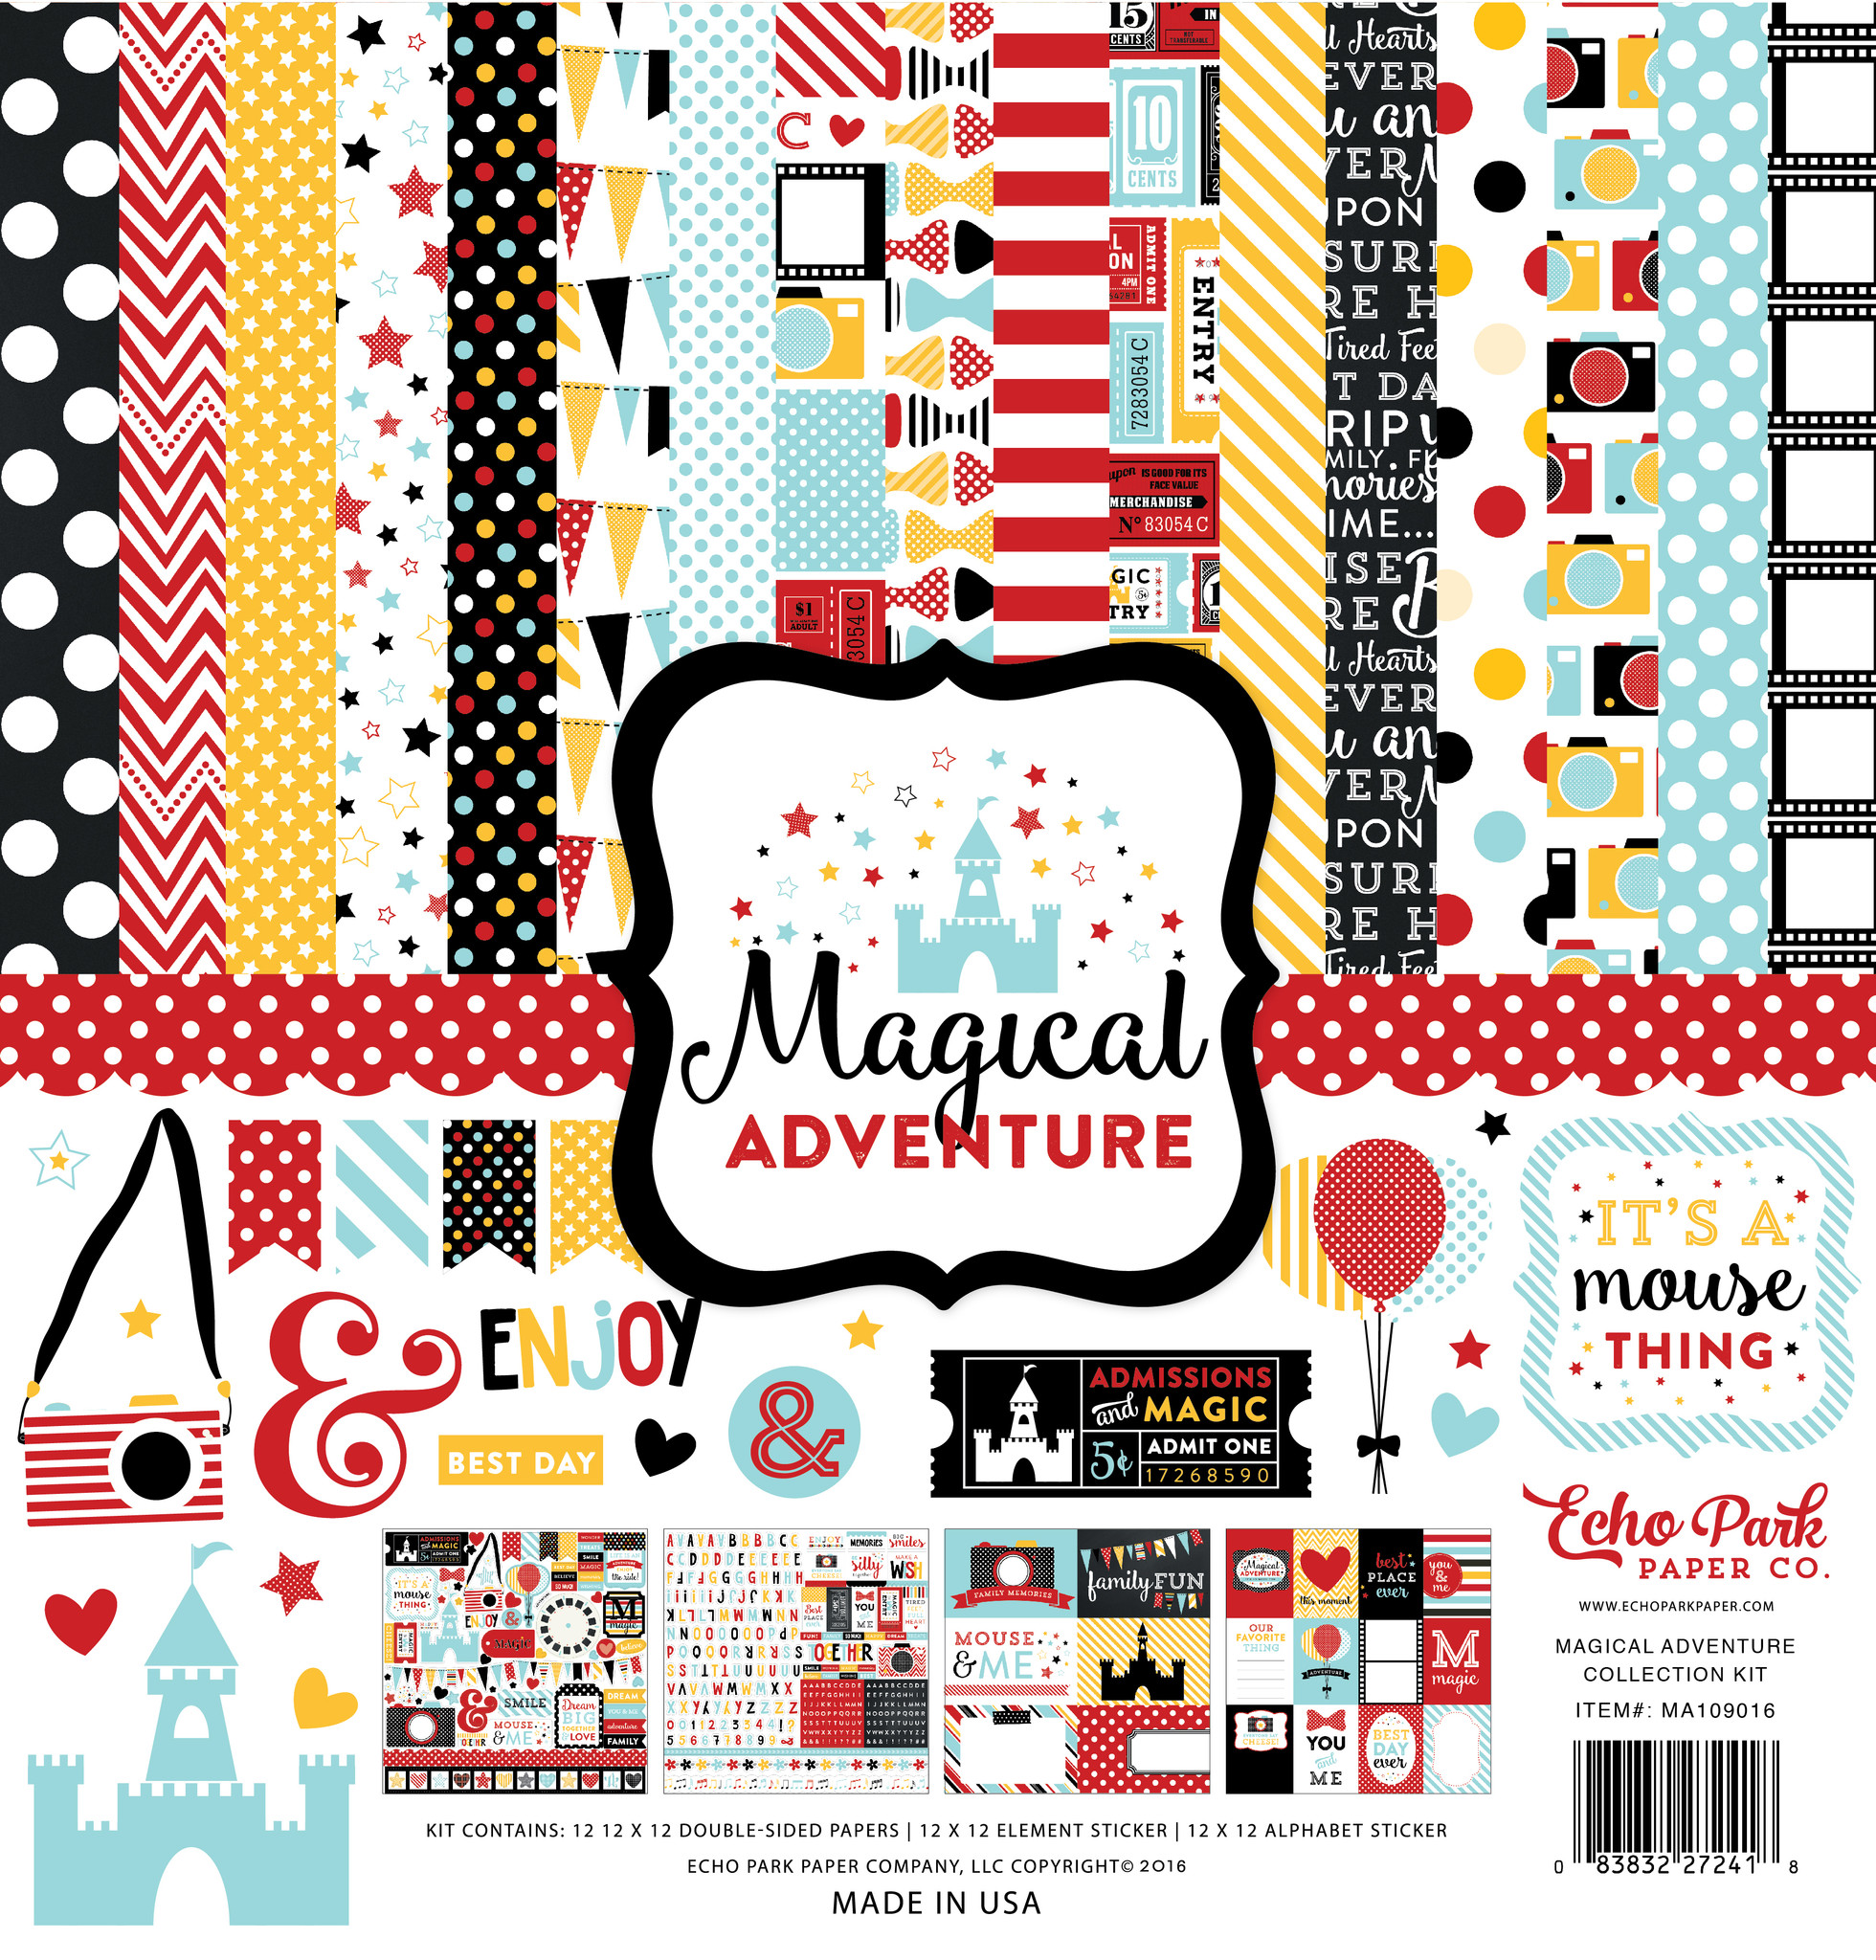 Magical Adventure Element Sticker - Echo Park Paper Co.